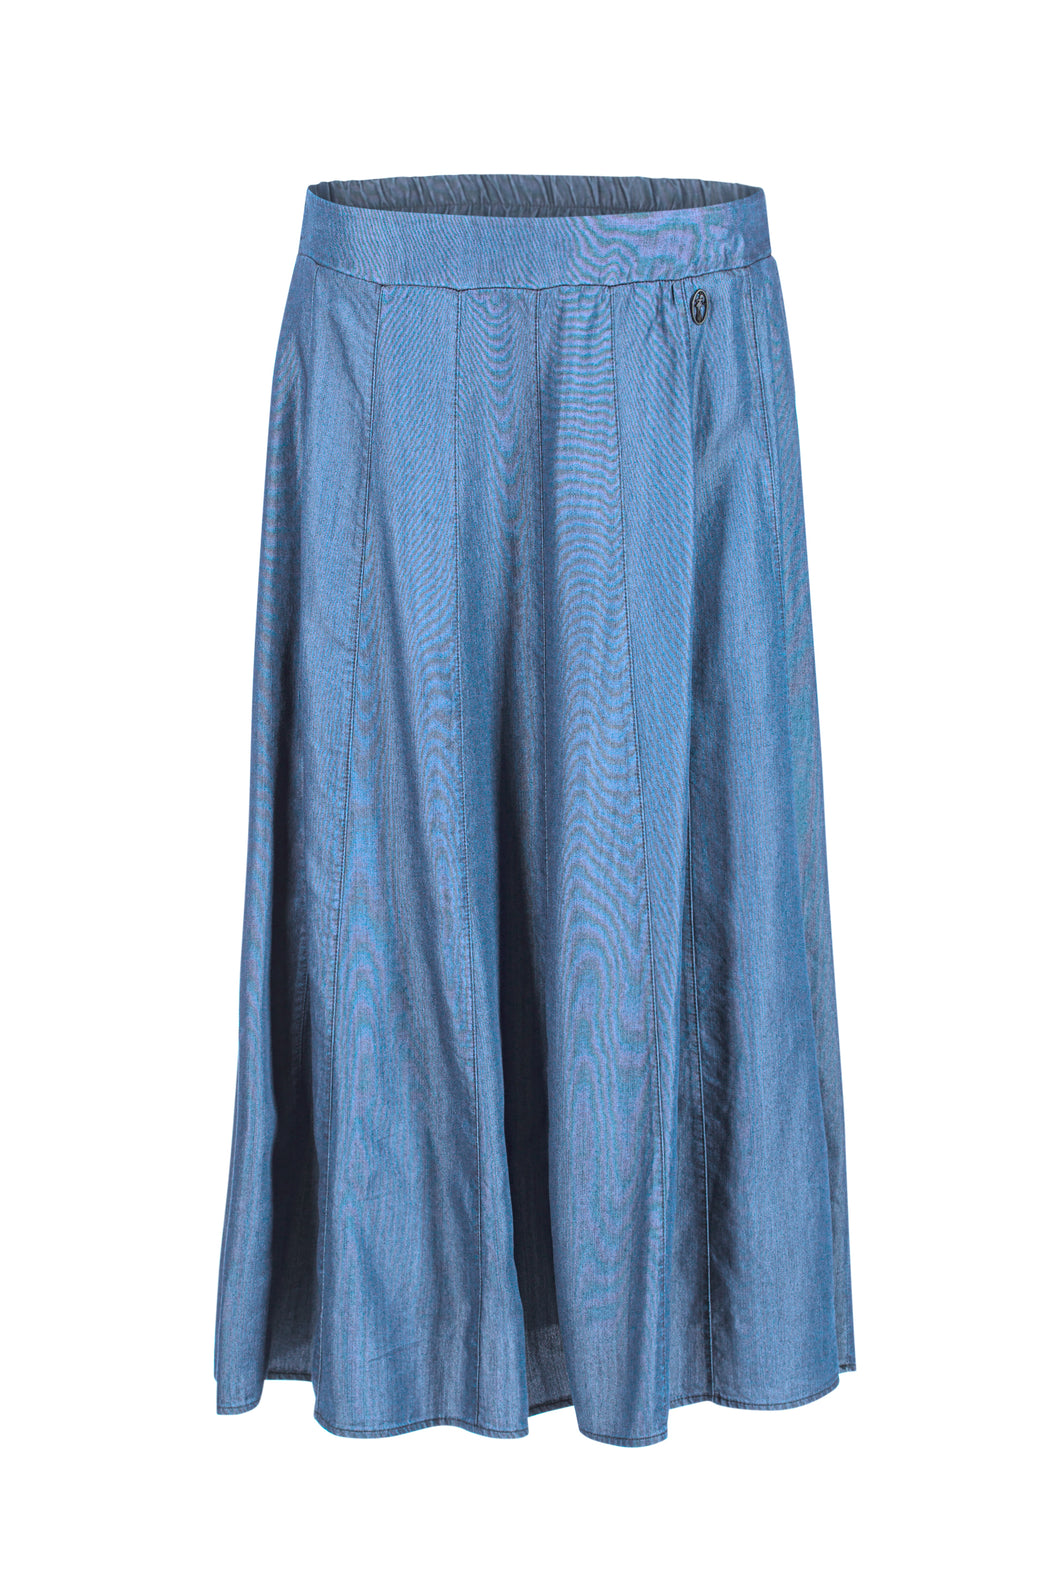 Dame Blanche Rok FULDA 877 Tenden Blue, is een soepel vallende wijde rok.